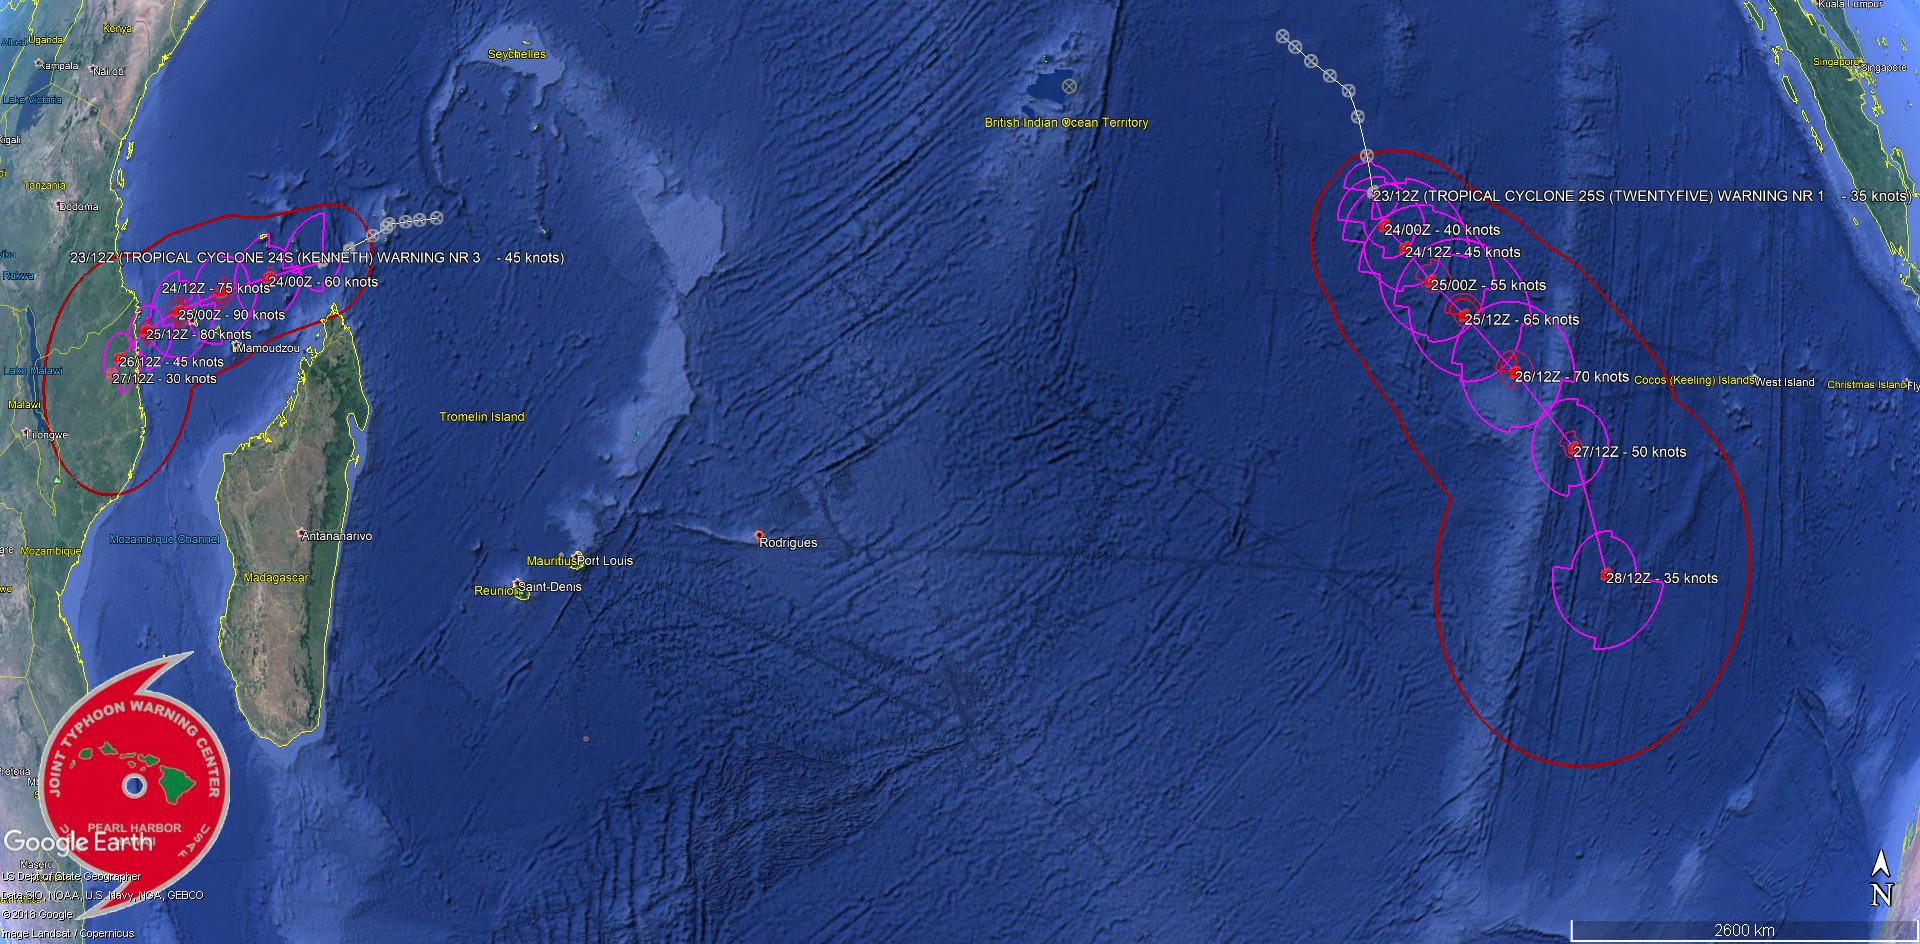 Prévisions de trajectoire et d'intensité de la Navy US pour les deux systèmes cycloniques tropicaux actuellement sur le Sud de l'océan indien.